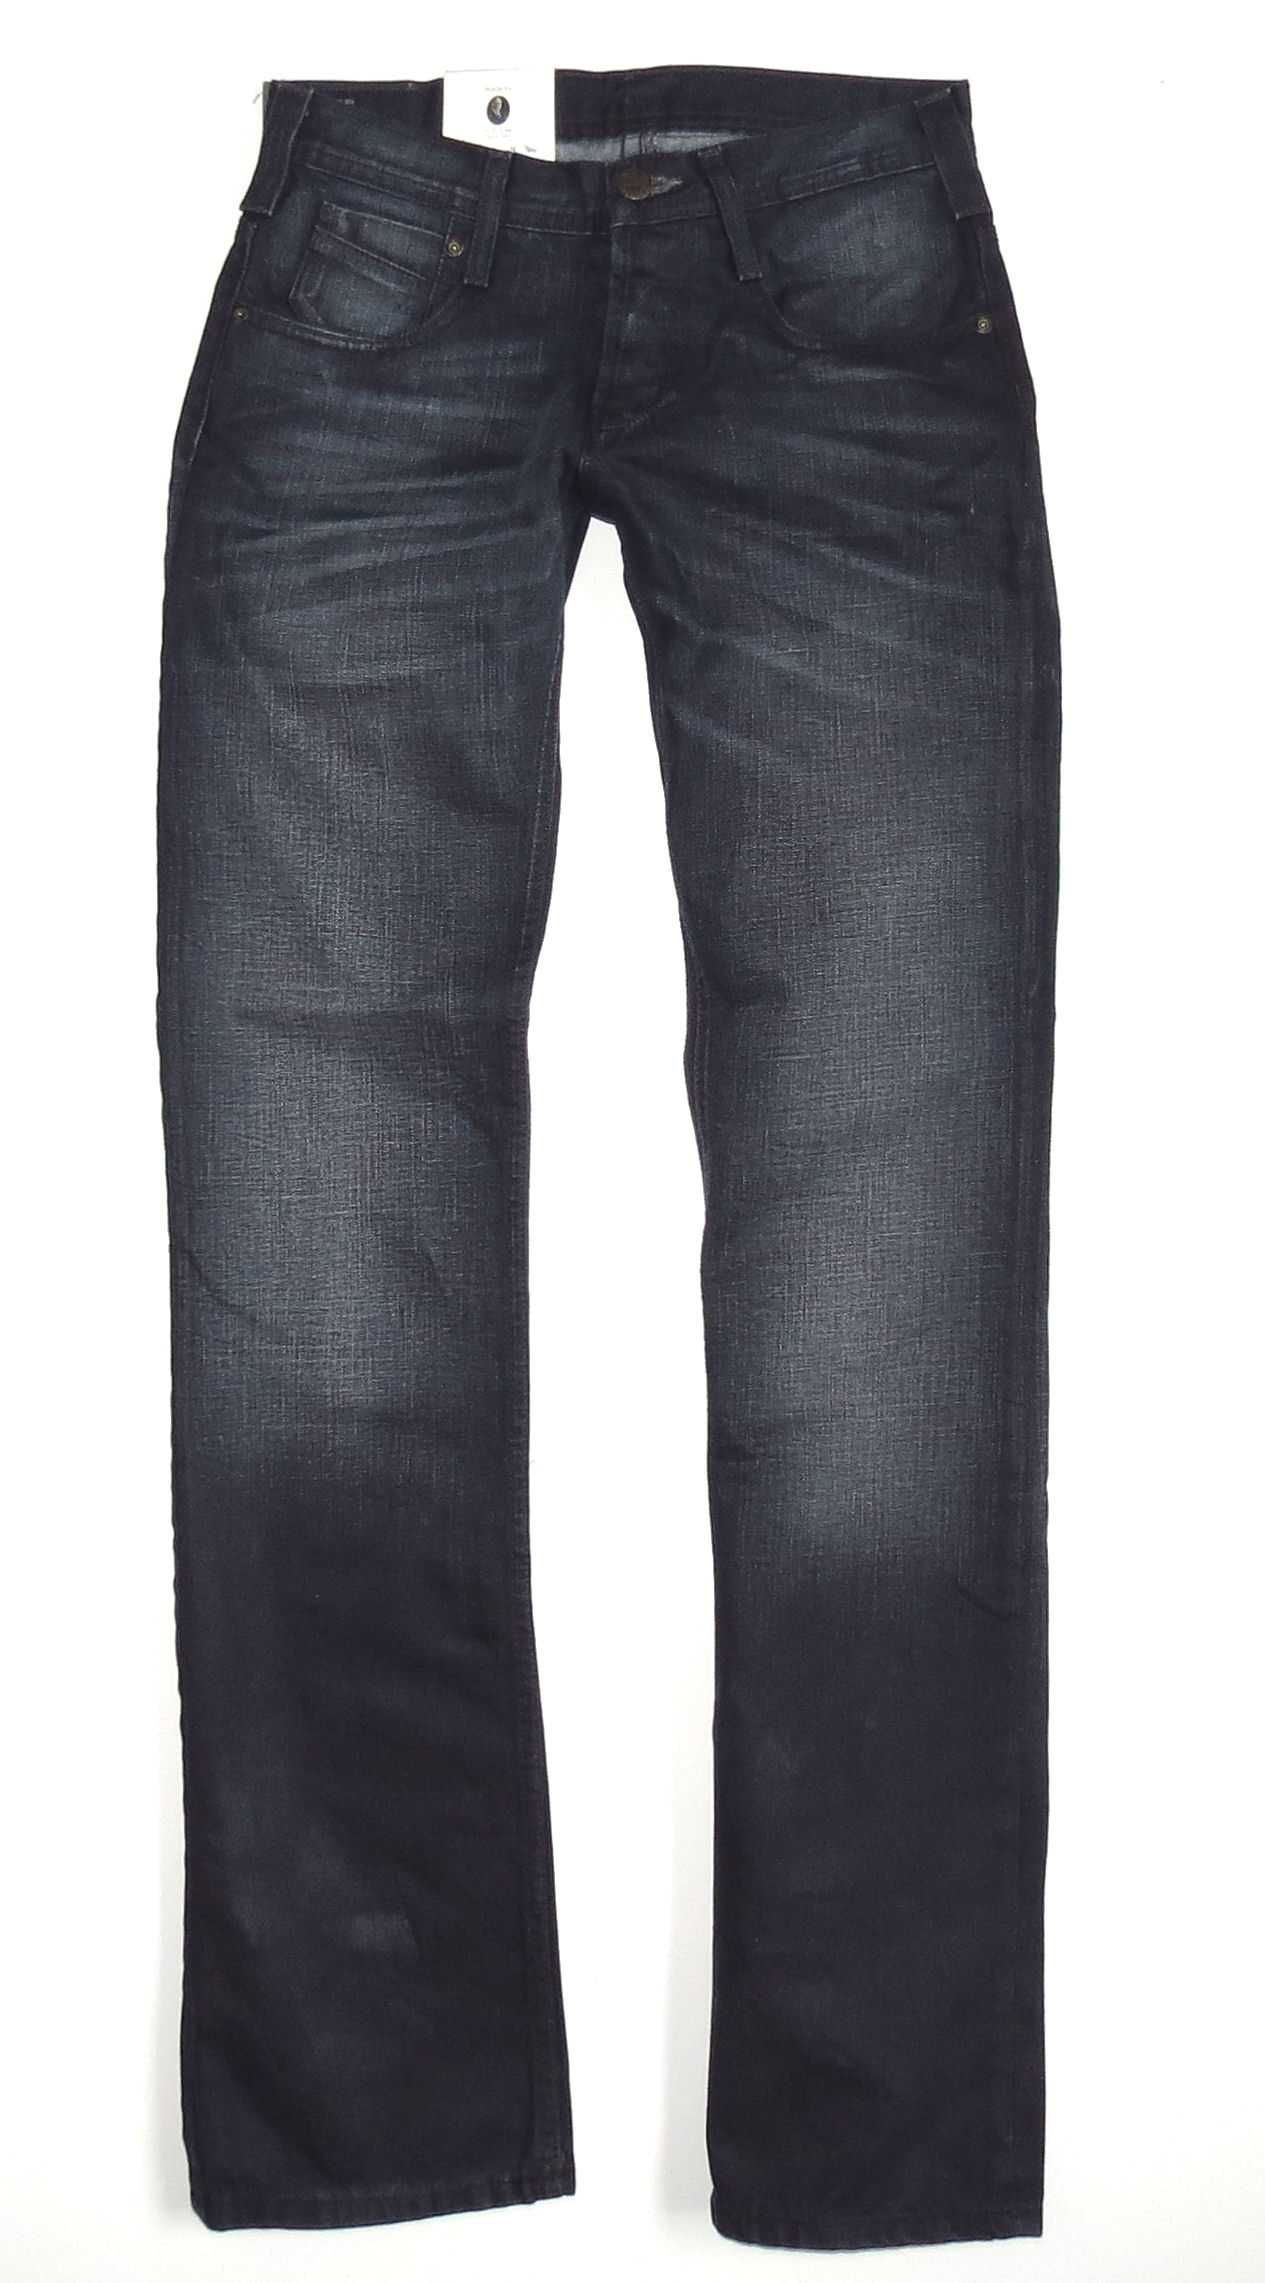 Spodnie jeansy męskie Lee Knox Cinch W29 L34 29/34